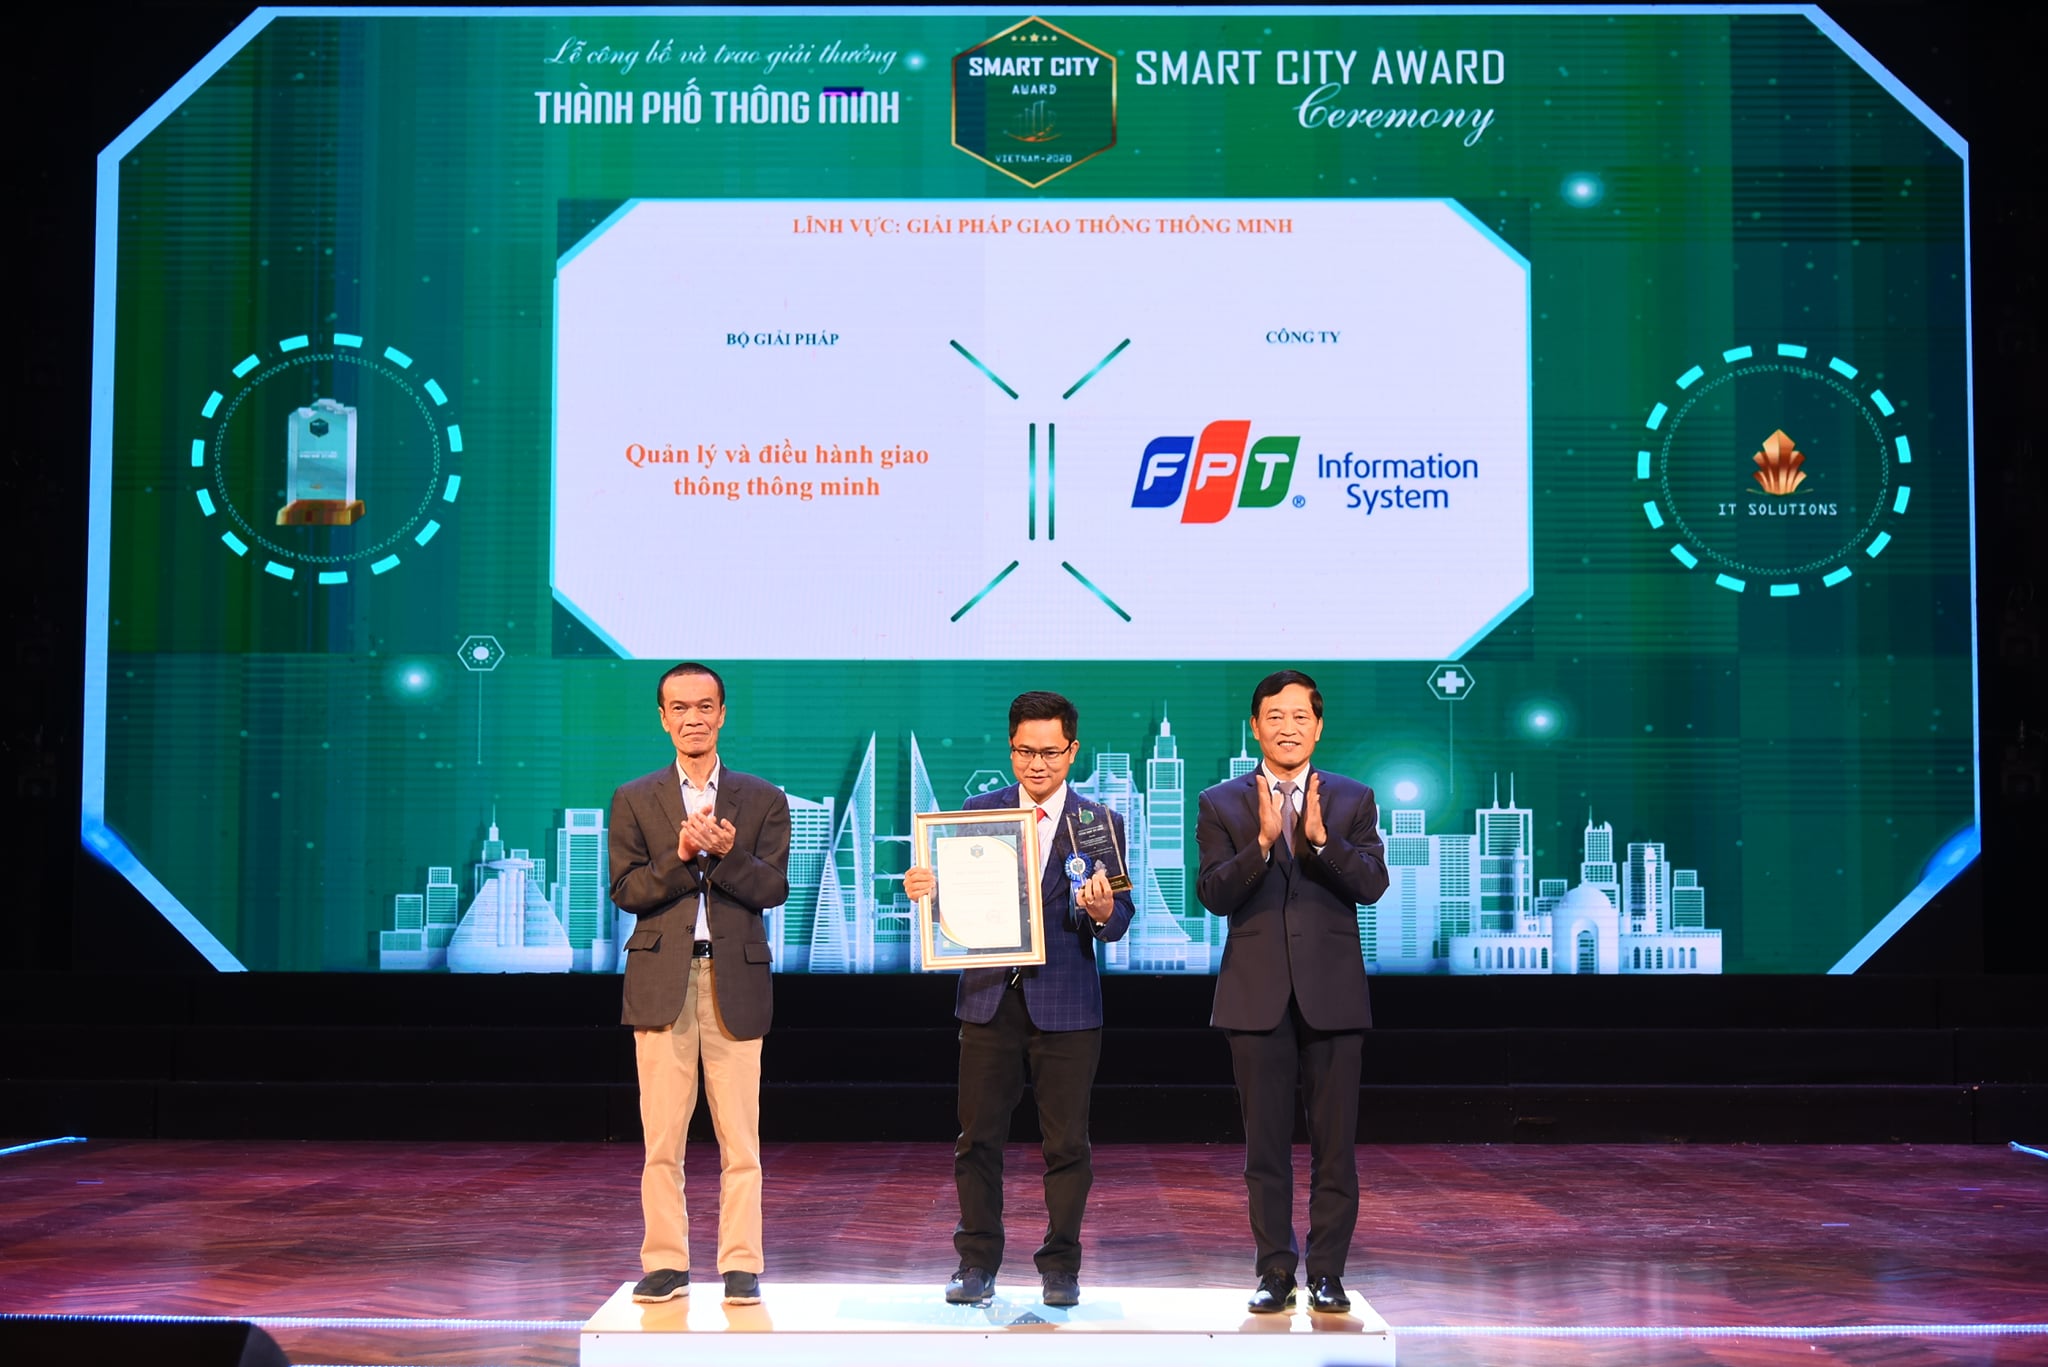 Bộ giải pháp Quản lý và điều hành giao thông thông minh đạt Giải thưởng Thành phố thông minh Việt Nam 2020